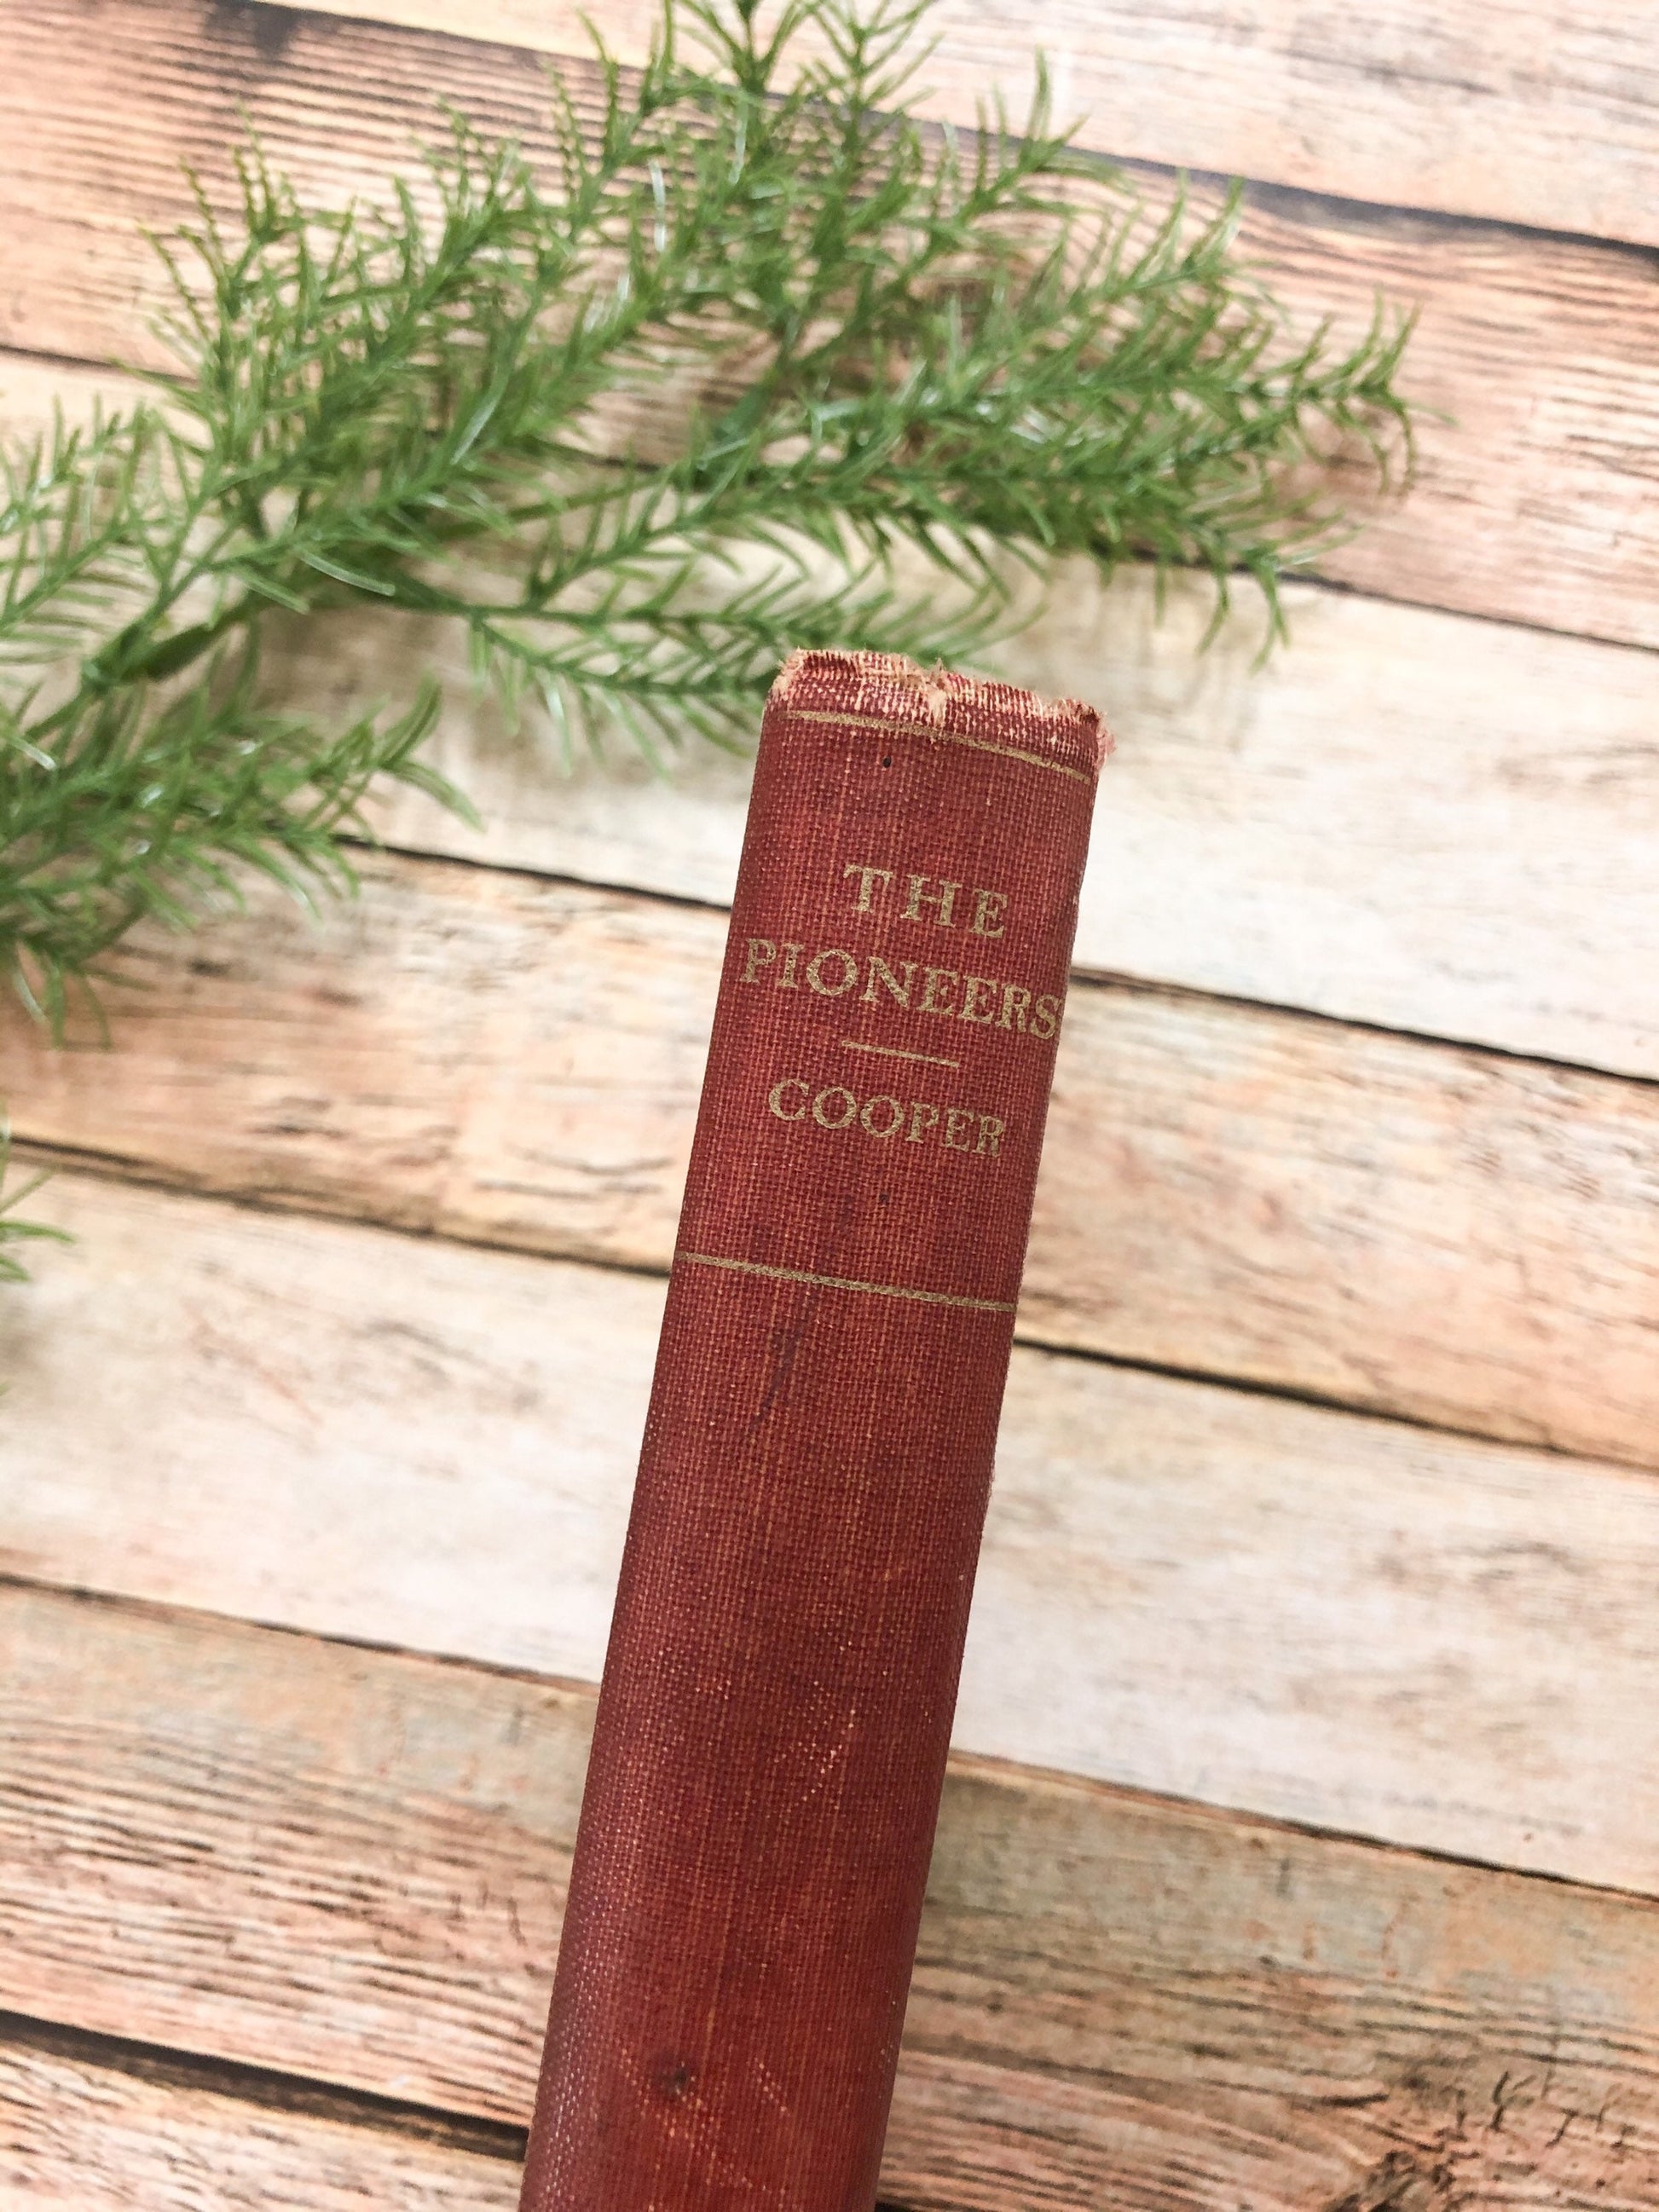 Vintage Book, The Pioneers by J Fenimore Cooper